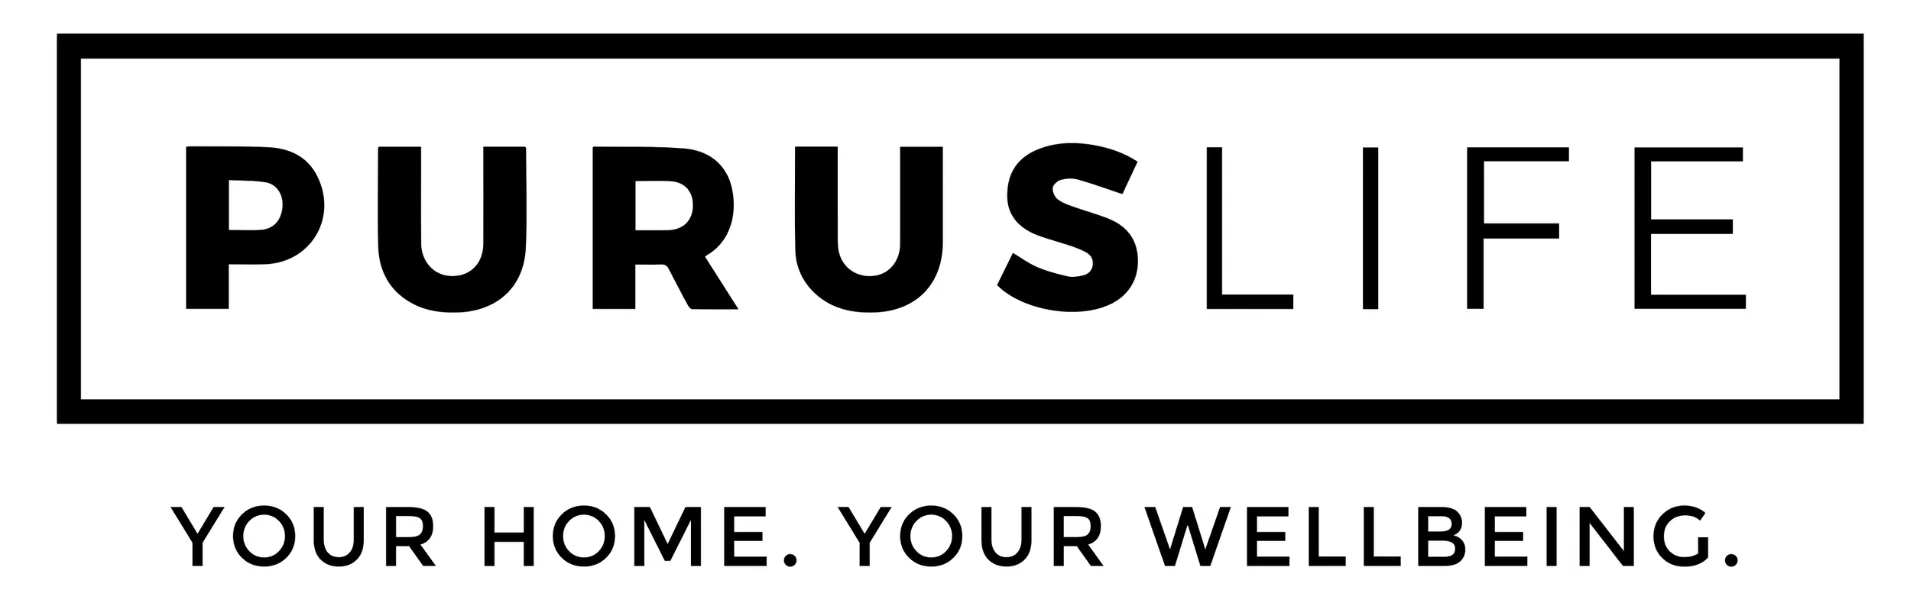 puruslife.co.uk